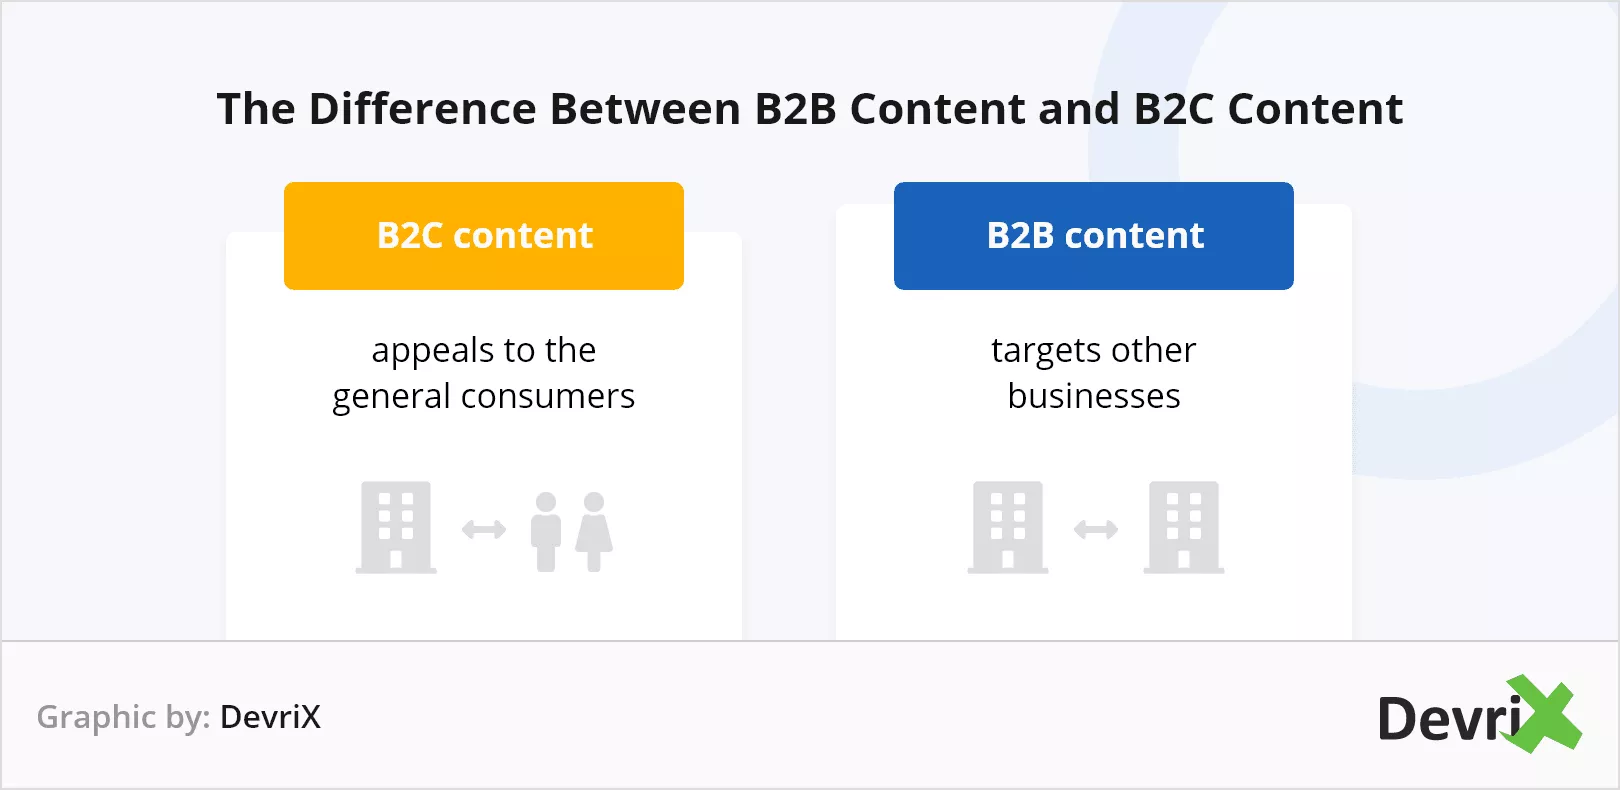 ¿Qué hace que el contenido B2B sea diferente del contenido B2C?